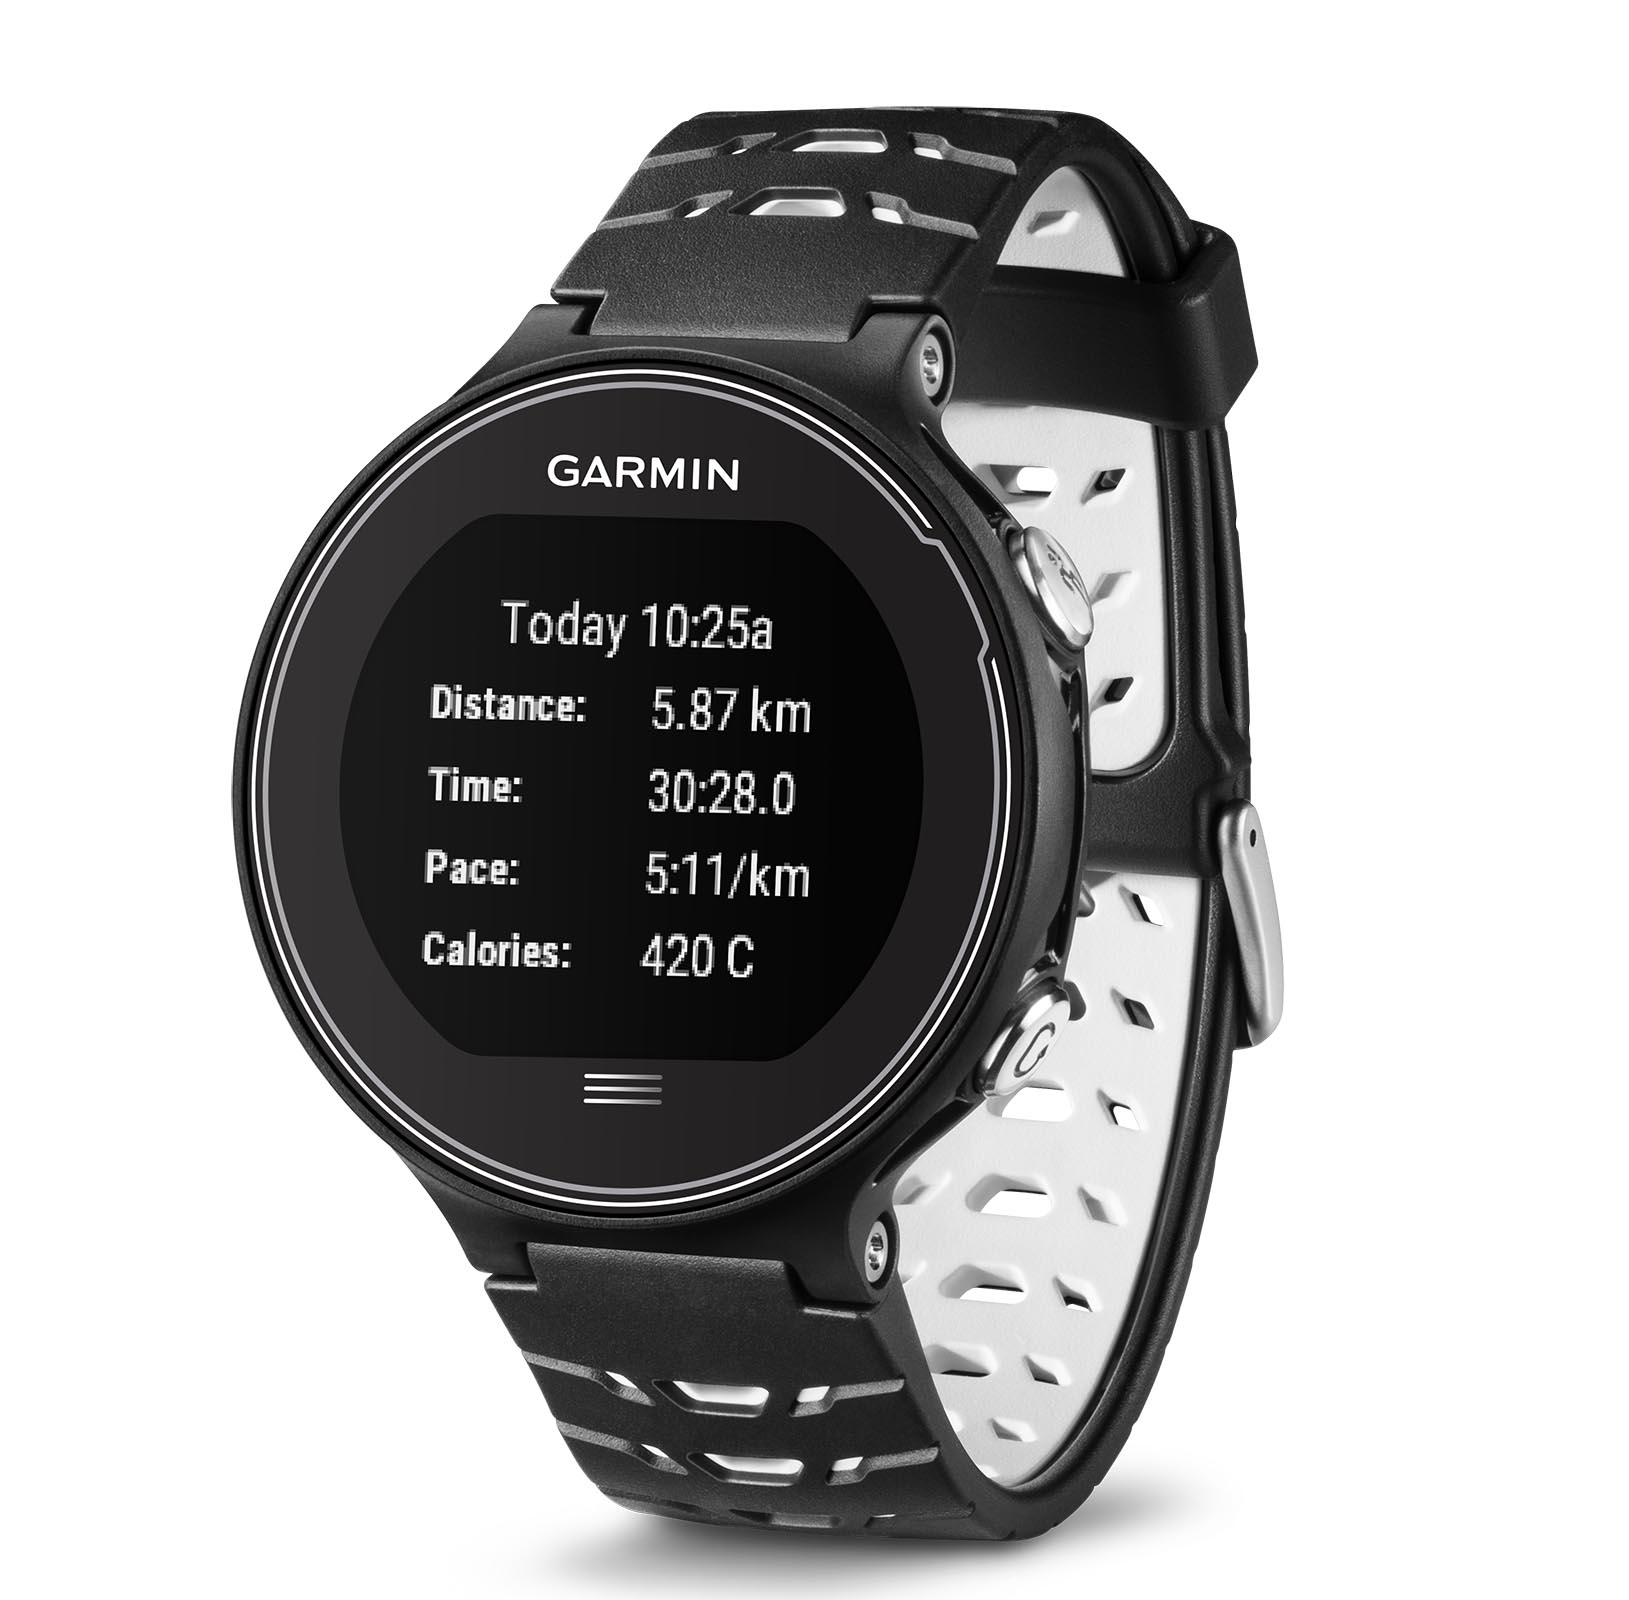 Garmin Forerunner 630 Touchscreen Sport Band Running Watch, Black and White - Walmart.com